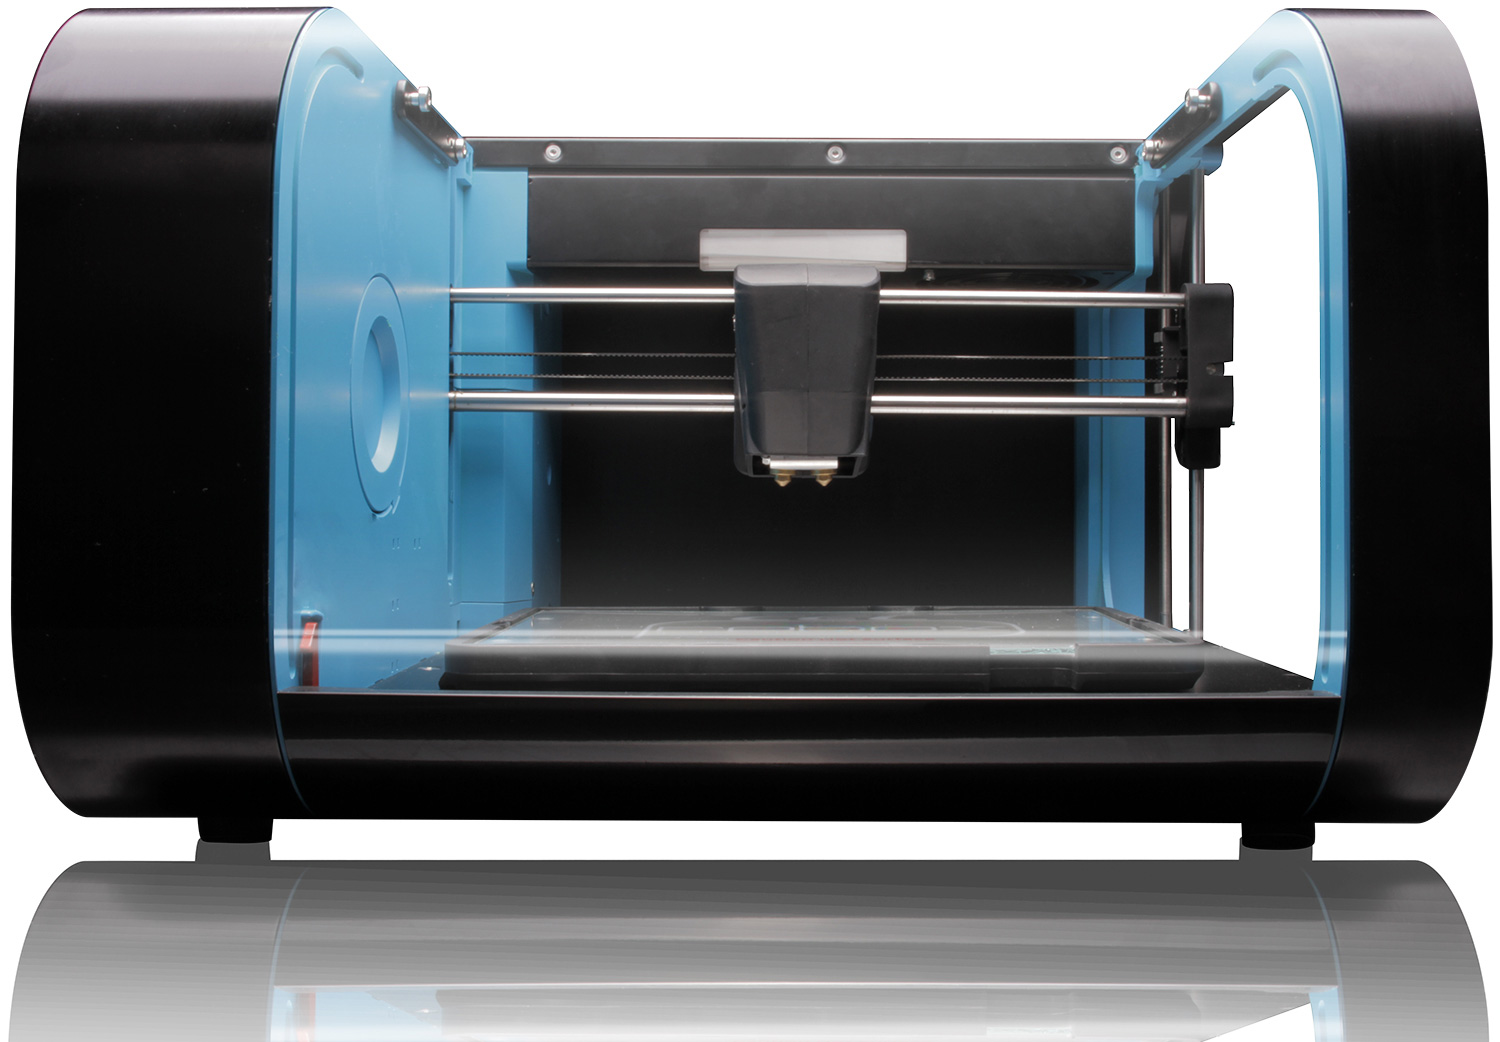 Maggiori informazioni su "Cel Robox, la stampante 3D con estrusori dedicati"